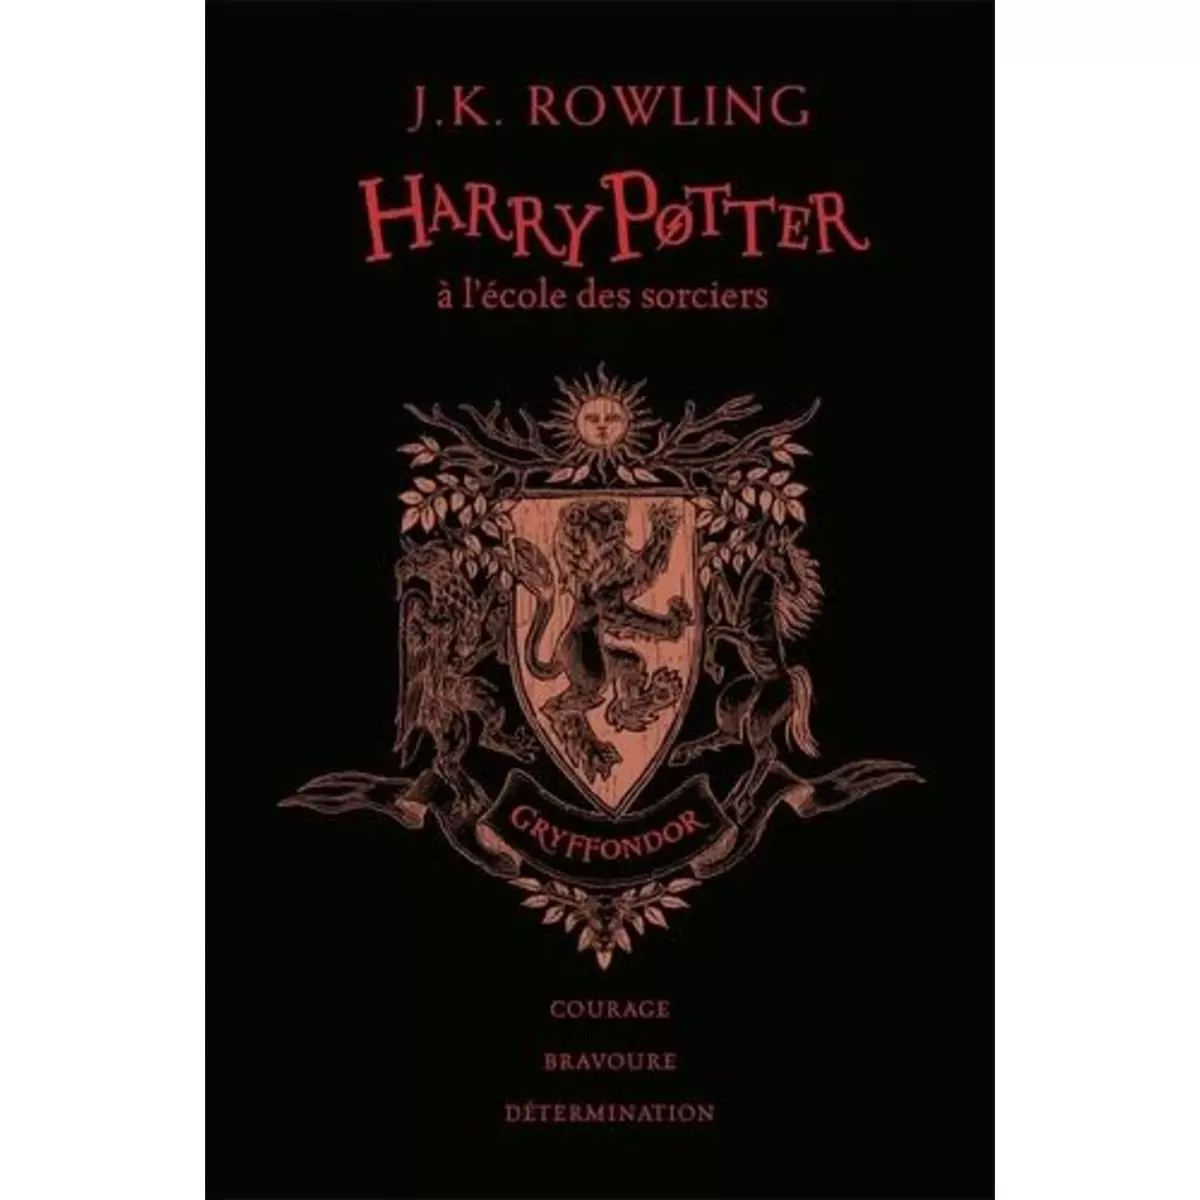  HARRY POTTER TOME 1 : HARRY POTTER A L'ECOLE DES SORCIERS (GRYFFONDOR). EDITION COLLECTOR 20E ANNIVERSAIRE, Rowling J.K.